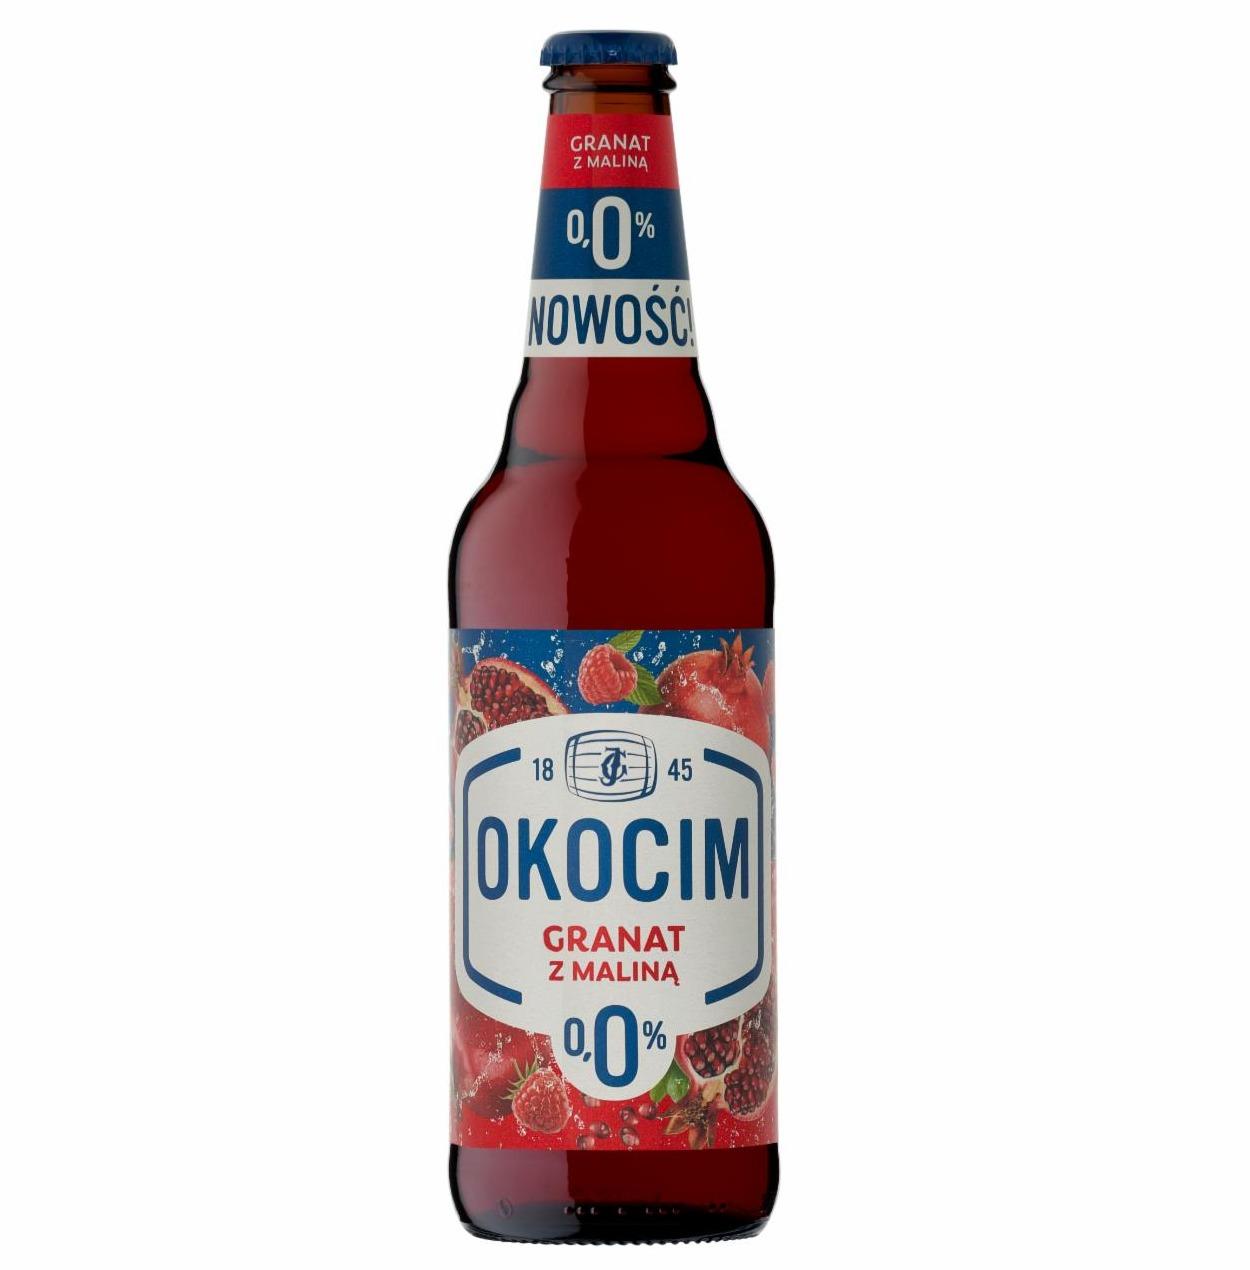 Zdjęcia - Okocim Mix piwa bezalkoholowego z lemoniadą granat z maliną 500 ml